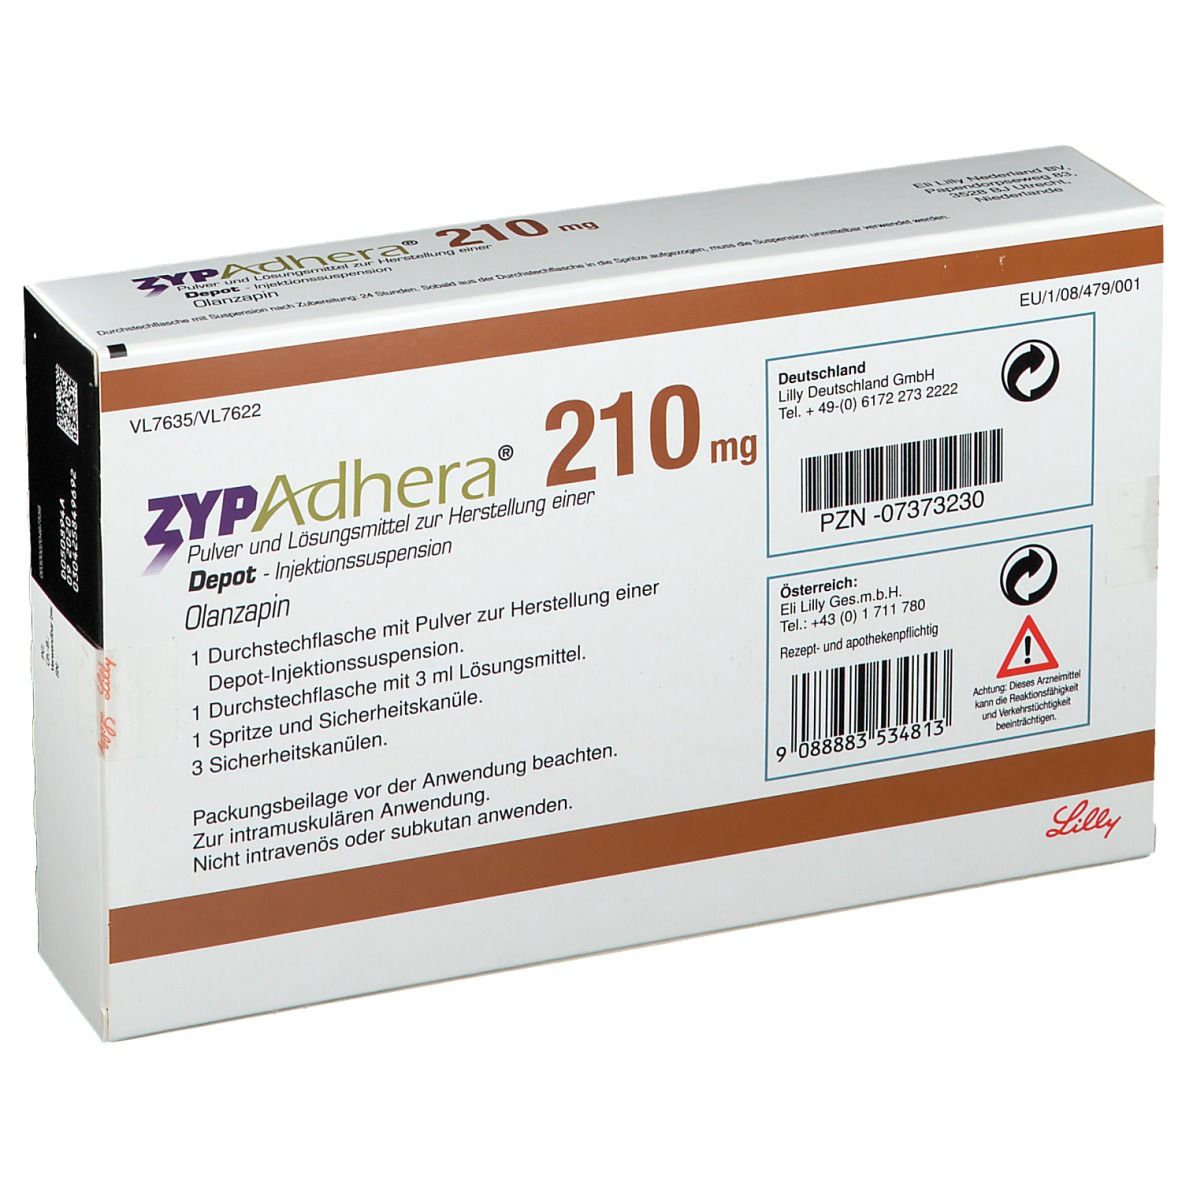 ZYPAdhera® 210 mg